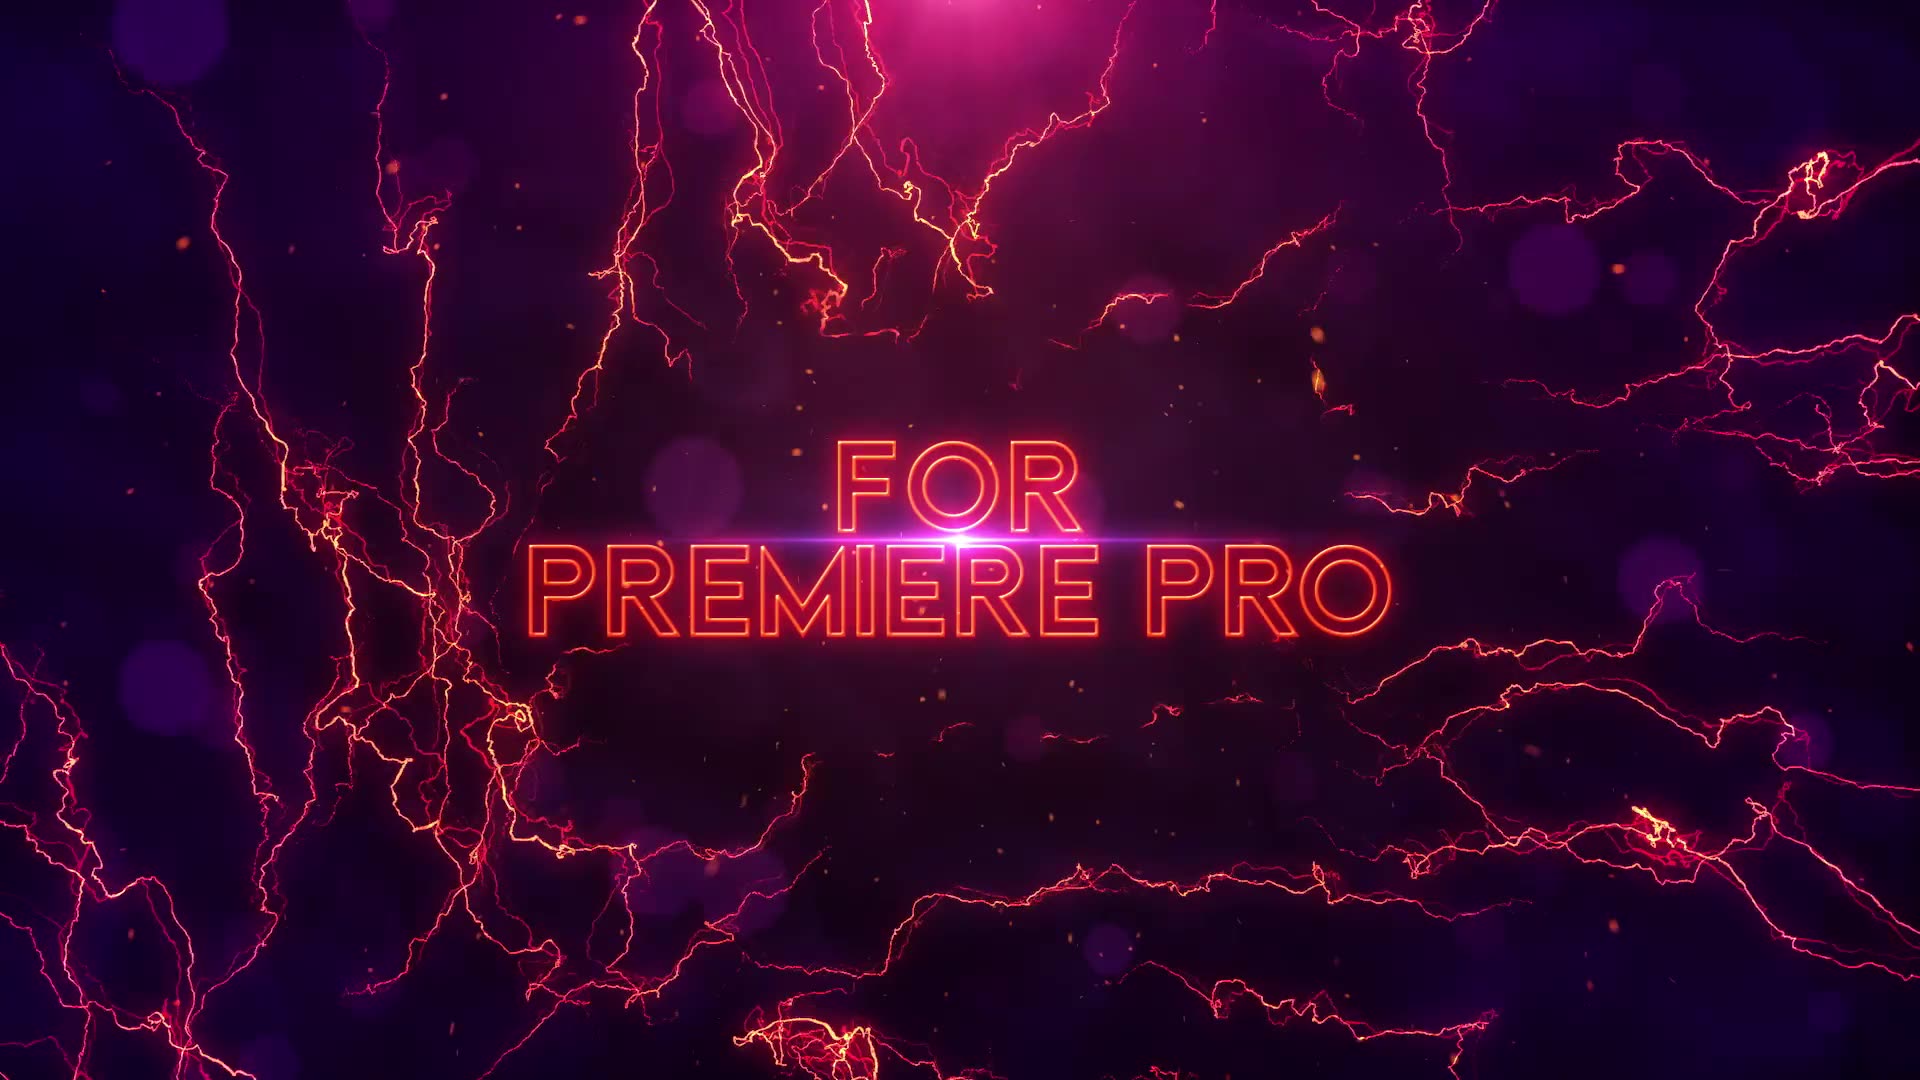 Electric Action Titles Premiere Pro Videohive 33861194 Premiere Pro Image 3